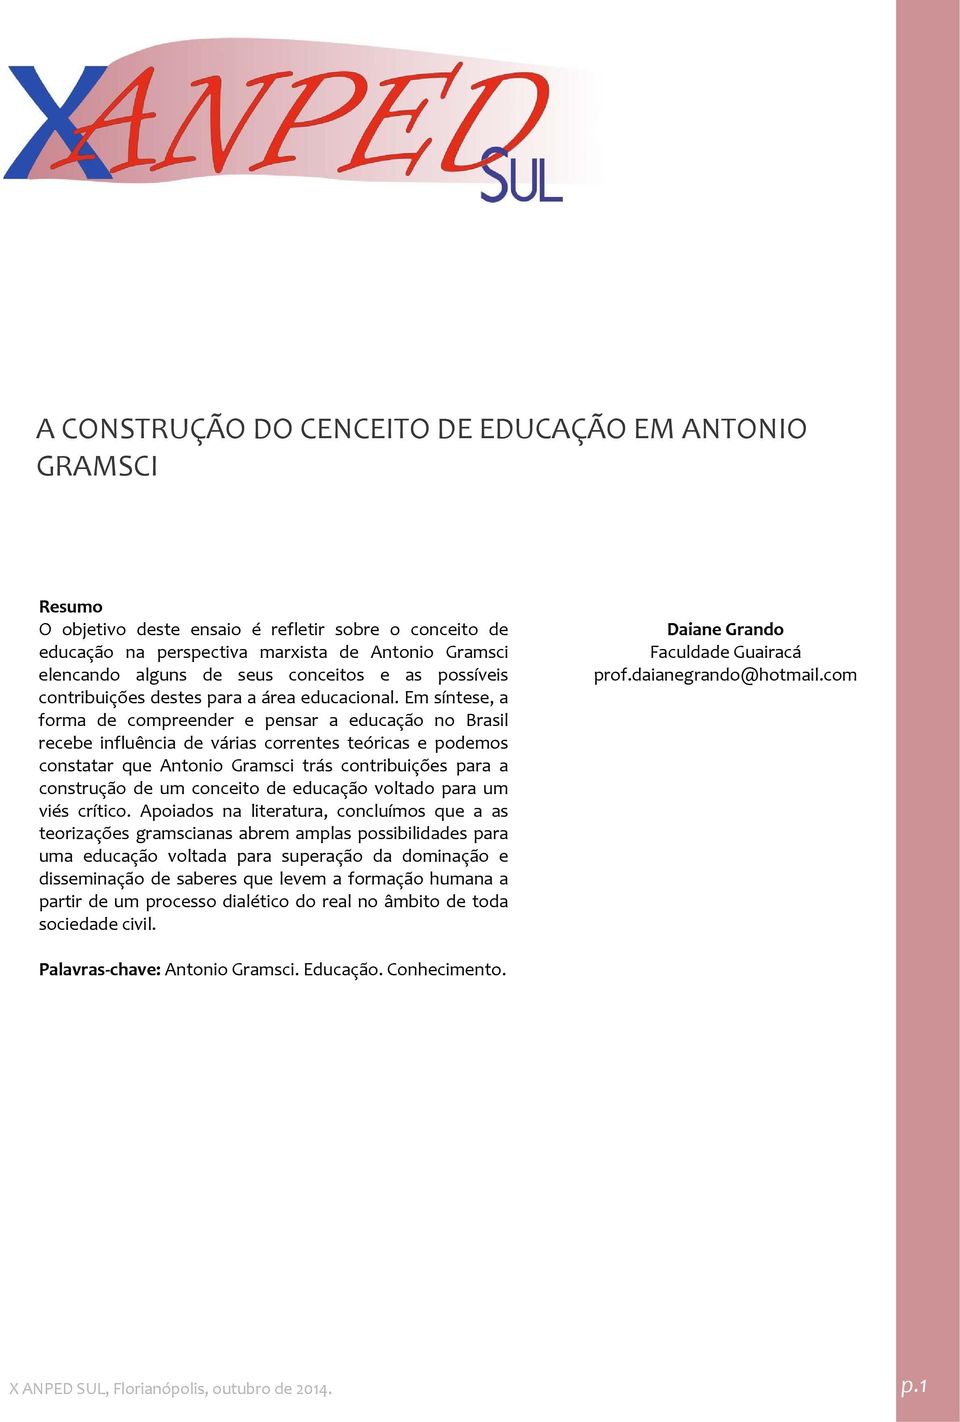 Em síntese, a forma de compreender e pensar a educação no Brasil recebe influência de várias correntes teóricas e podemos constatar que Antonio Gramsci trás contribuições para a construção de um